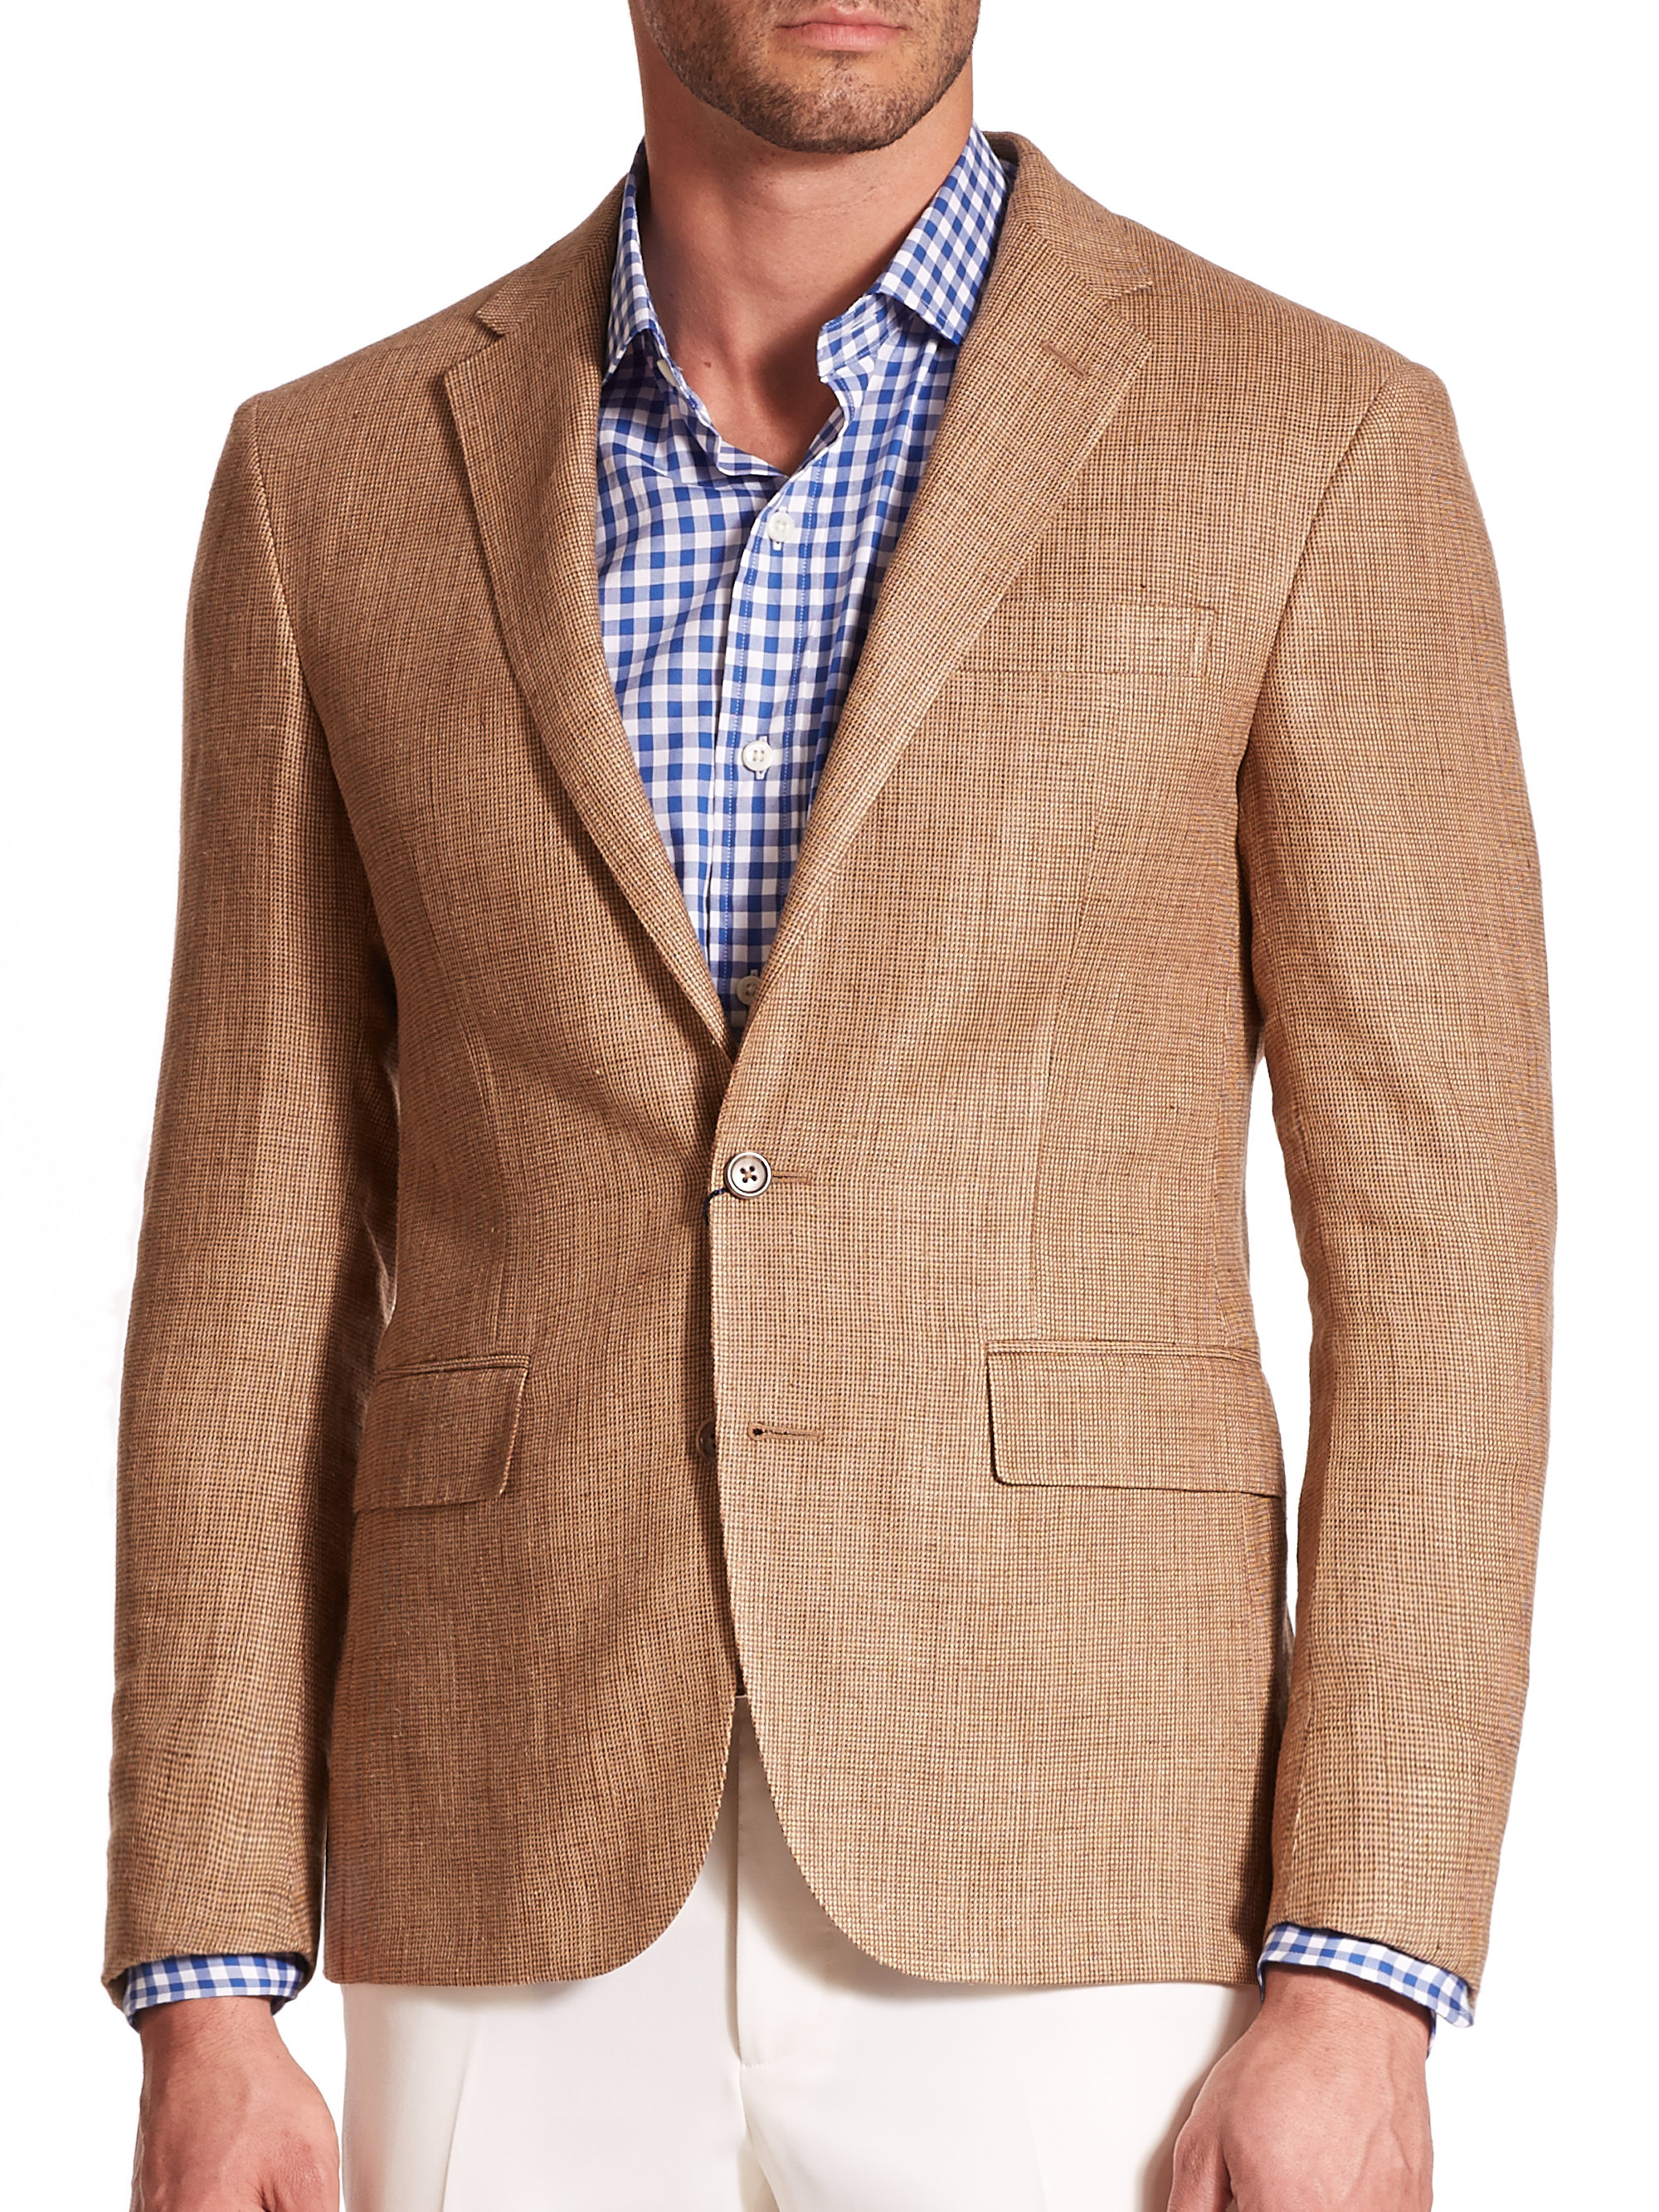 Lyst - Polo Ralph Lauren Tickweave Linen & Silk Sportcoat in Brown for Men